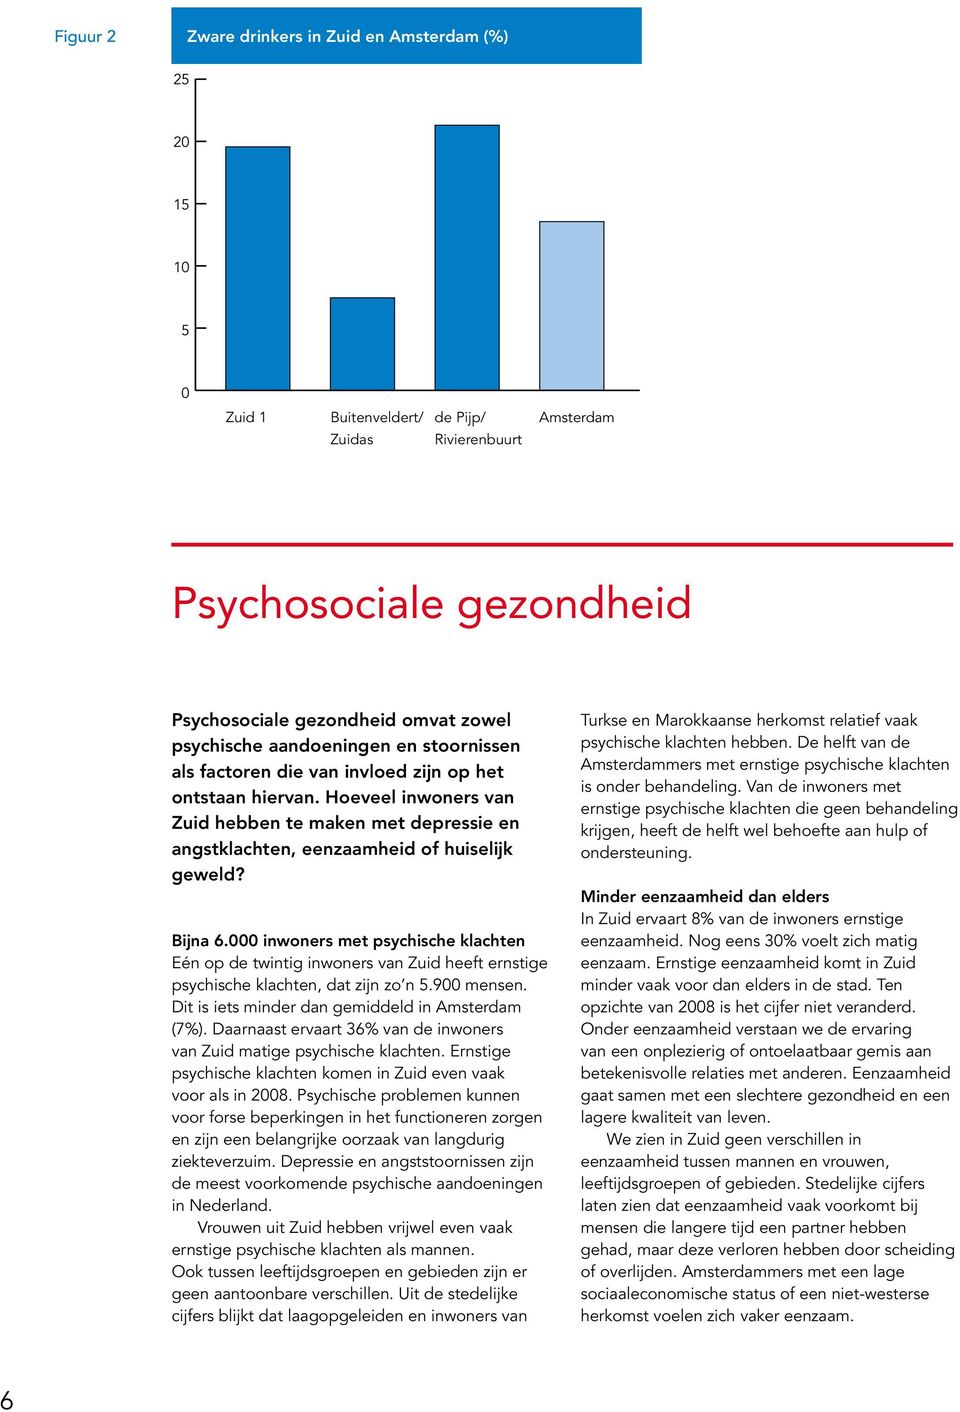 Bijna 6.000 inwoners met psychische klachten Eén op de twintig inwoners van Zuid heeft ernstige psychische klachten, dat zijn zo n 5.900 mensen. Dit is iets minder dan gemiddeld in Amsterdam (7%).